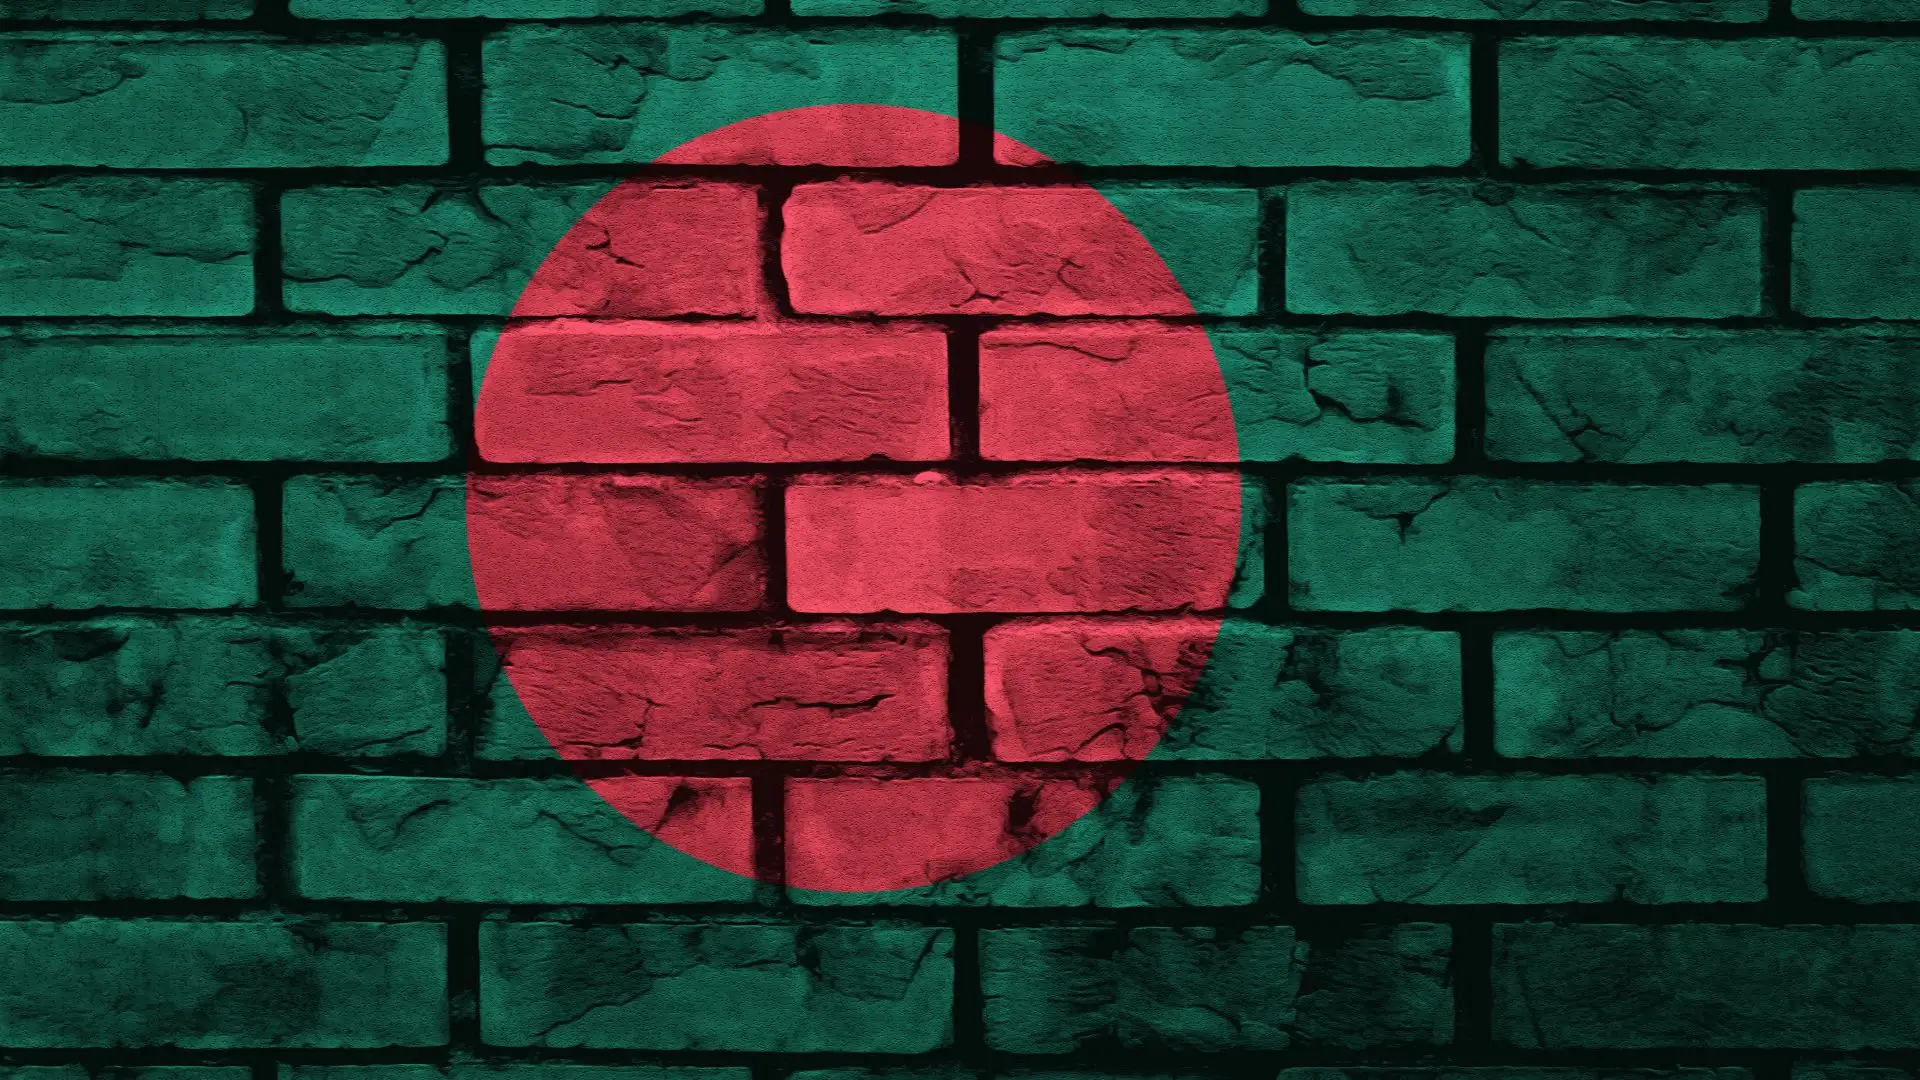 Imigrantes do Bangladesh denunciam extorsão para obter vistos para Portugal